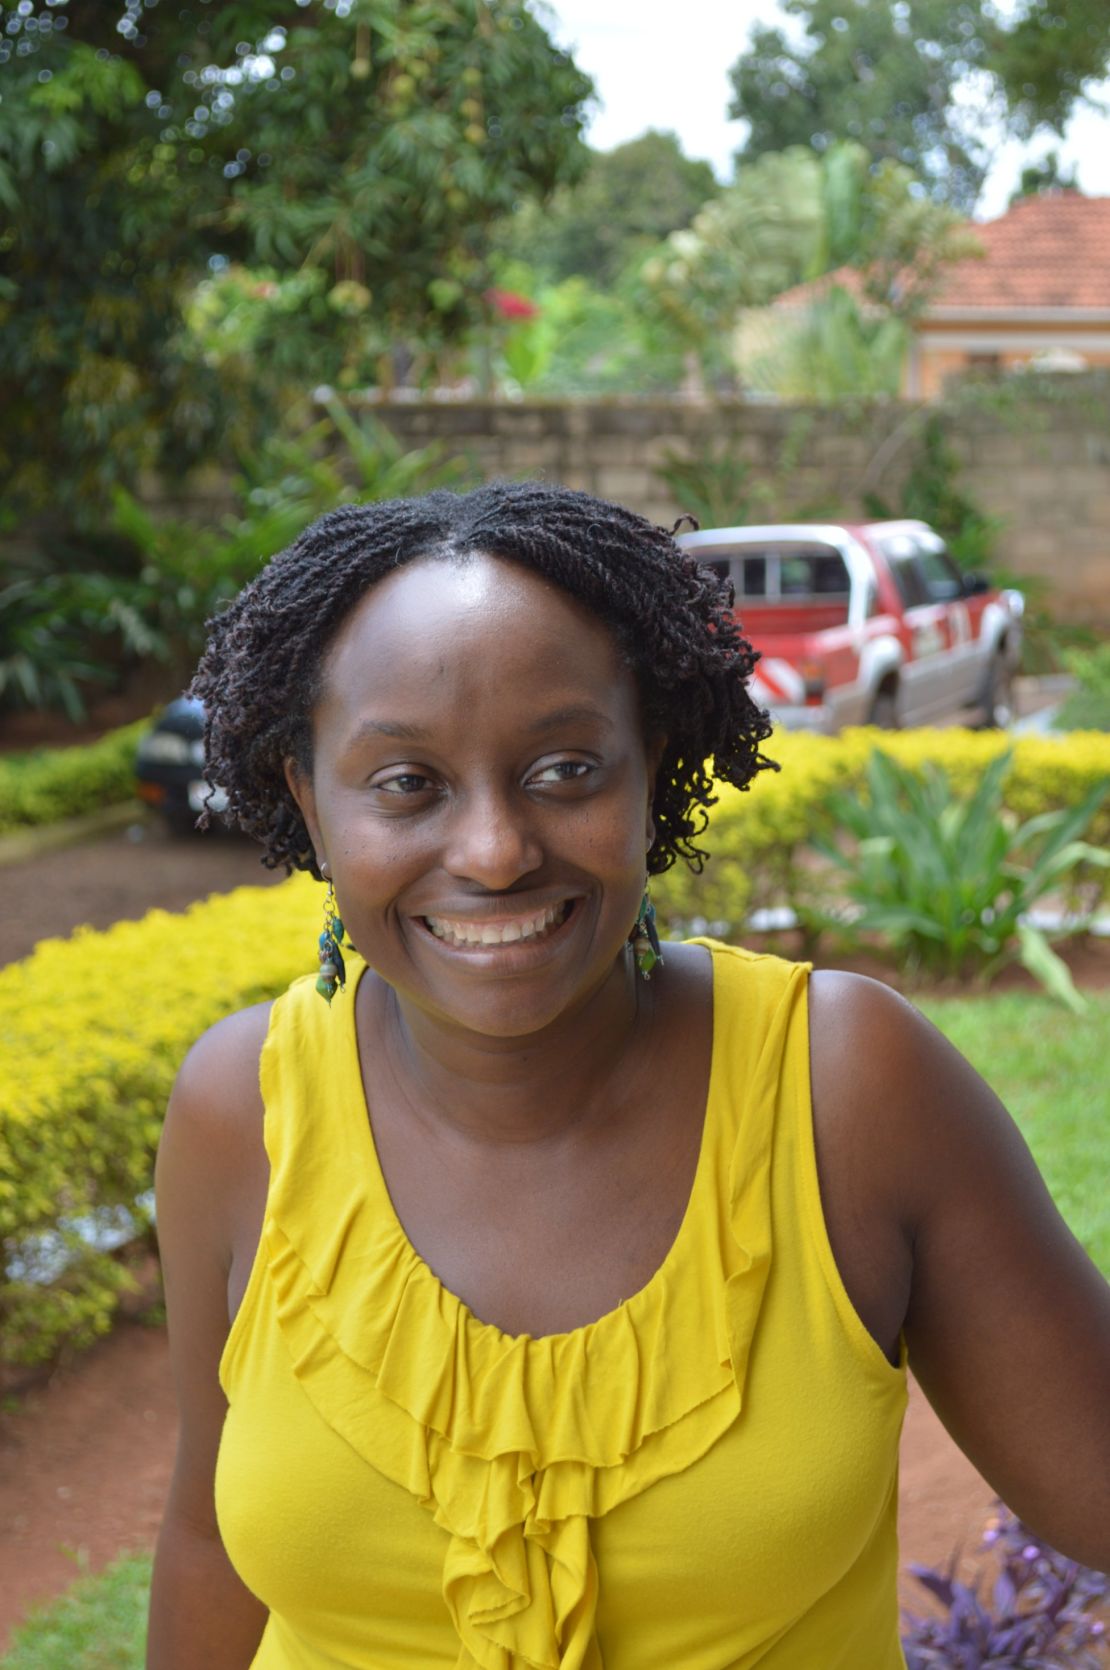 Dr Gladys Kalema-Zikusoka has spearheaded a movement to save Uganda's mountain gorillas. 